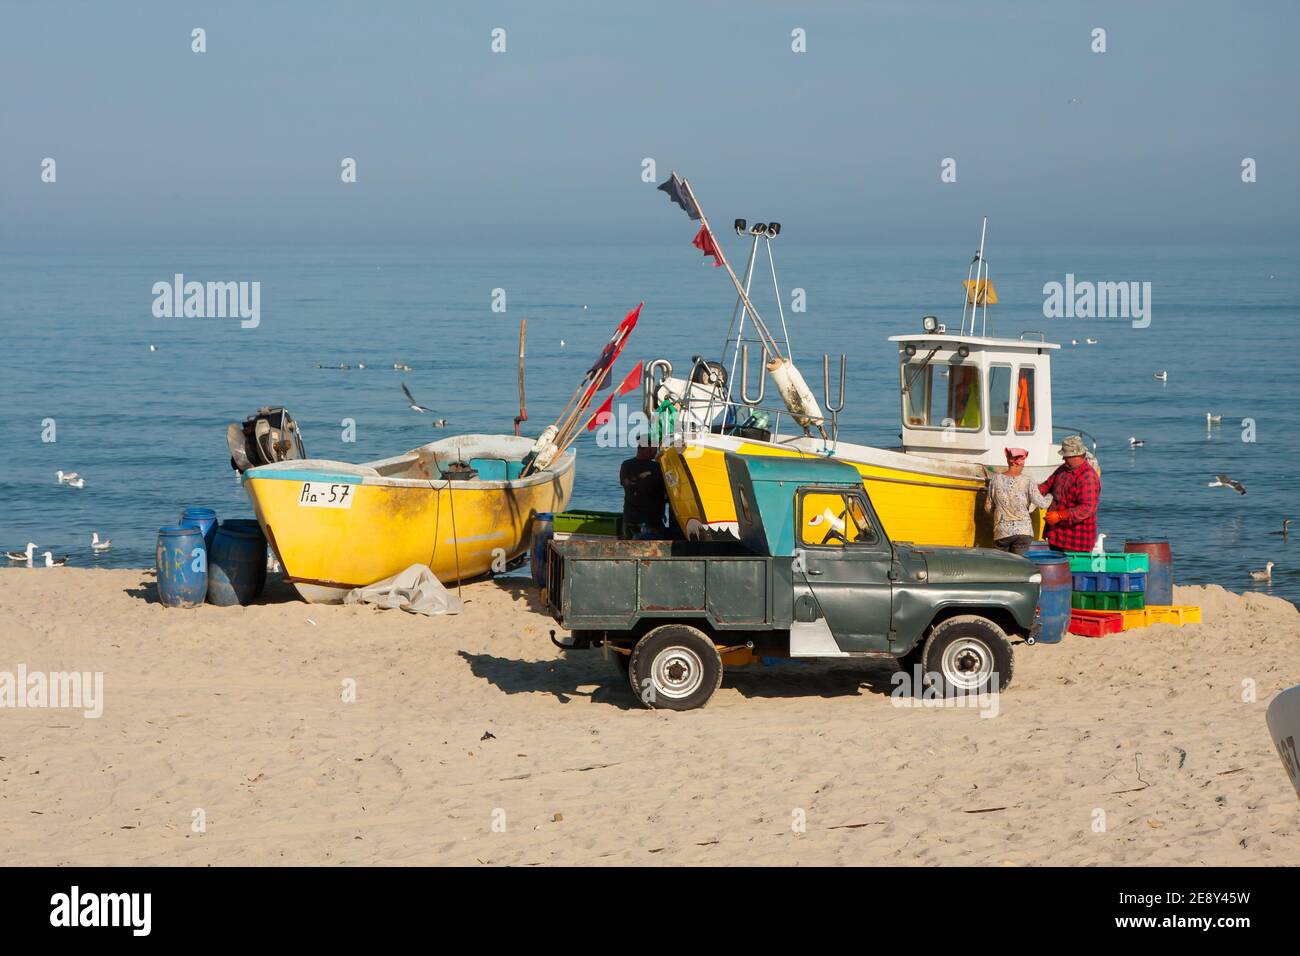 Porto di pesca a Piaski su Vistola Spit, Polonia. I pescatori che ritornano dalla cattura del pesce. Mar Baltico. Foto Stock